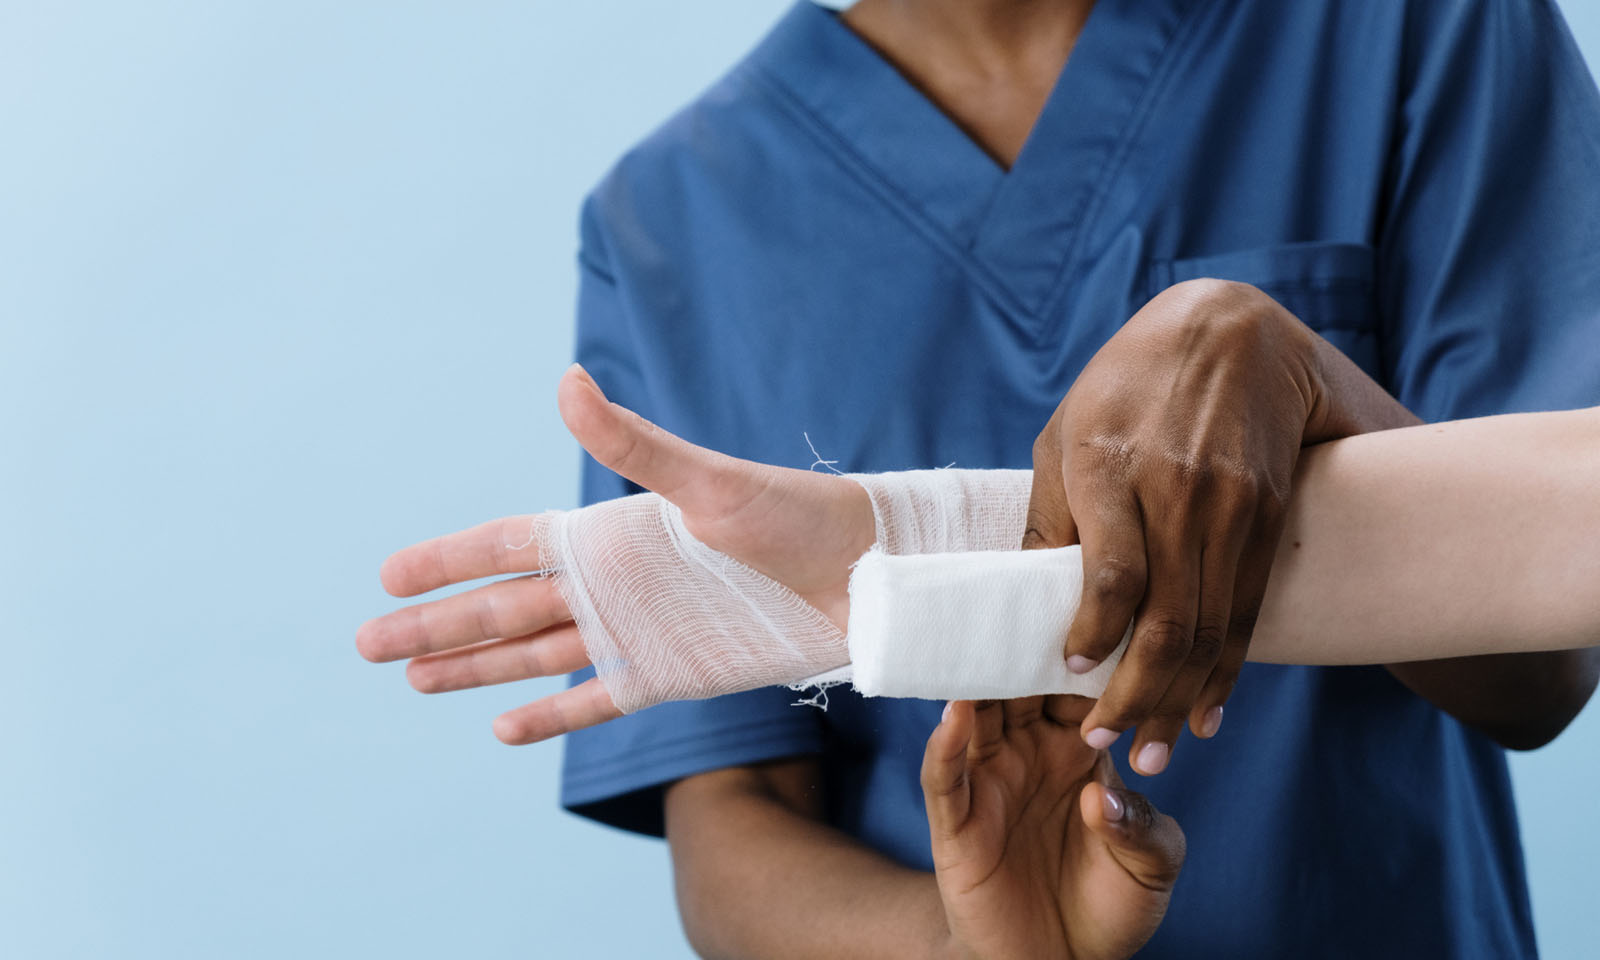 Healthcare worker in blue scrubs bandaging a wrist